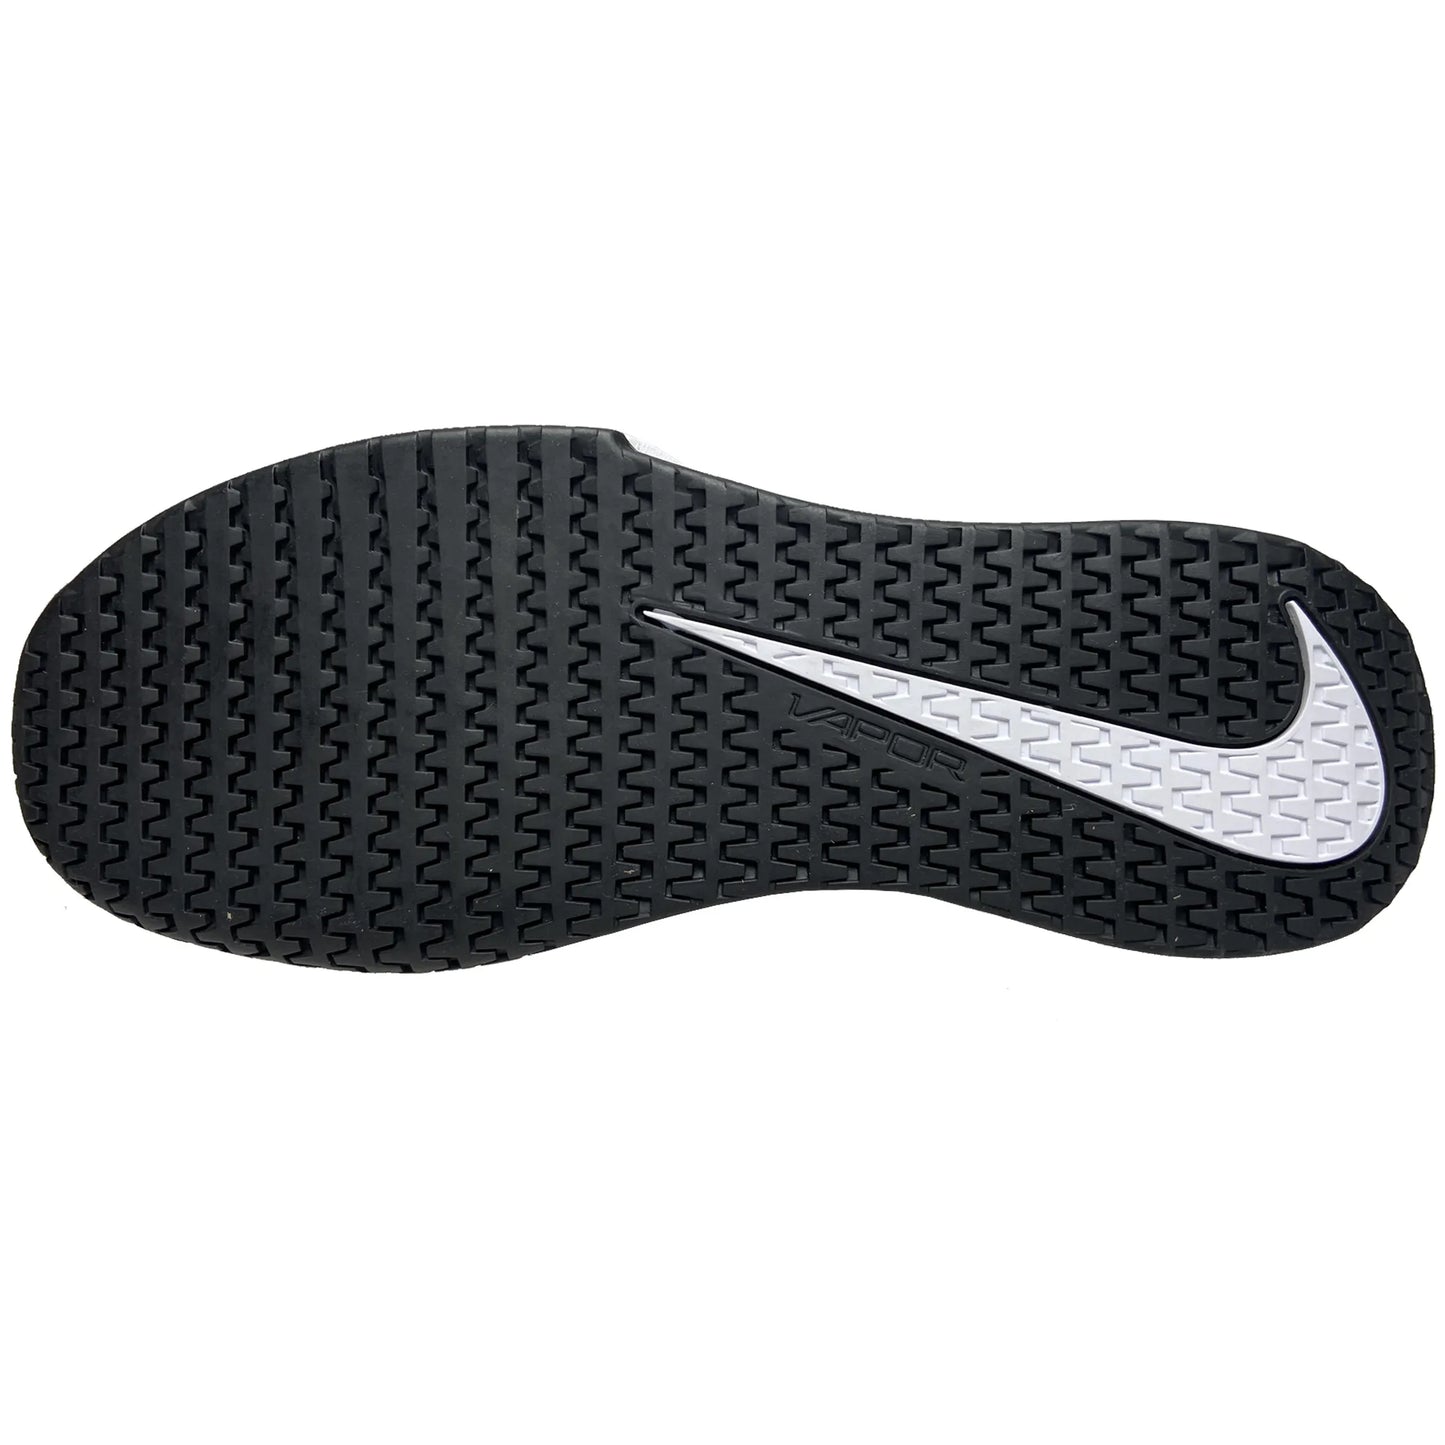 Nike Homme Vapor Lite 2 DV2018-001